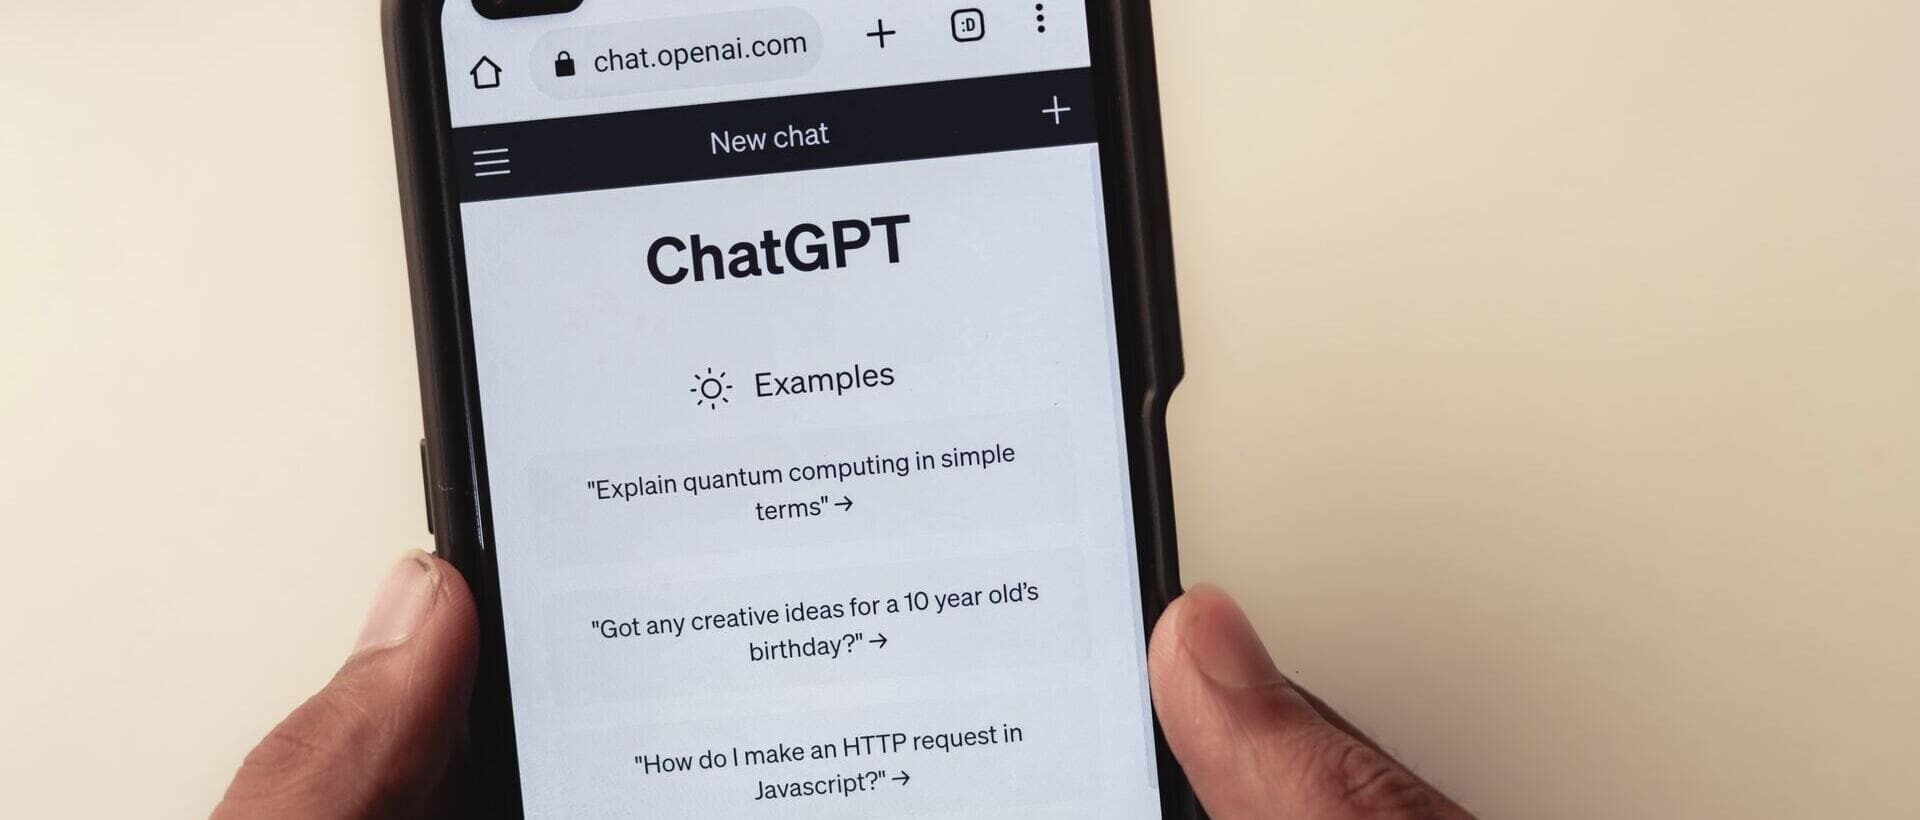 Ein Handy zeigt den Startbildschirm von ChatGPT